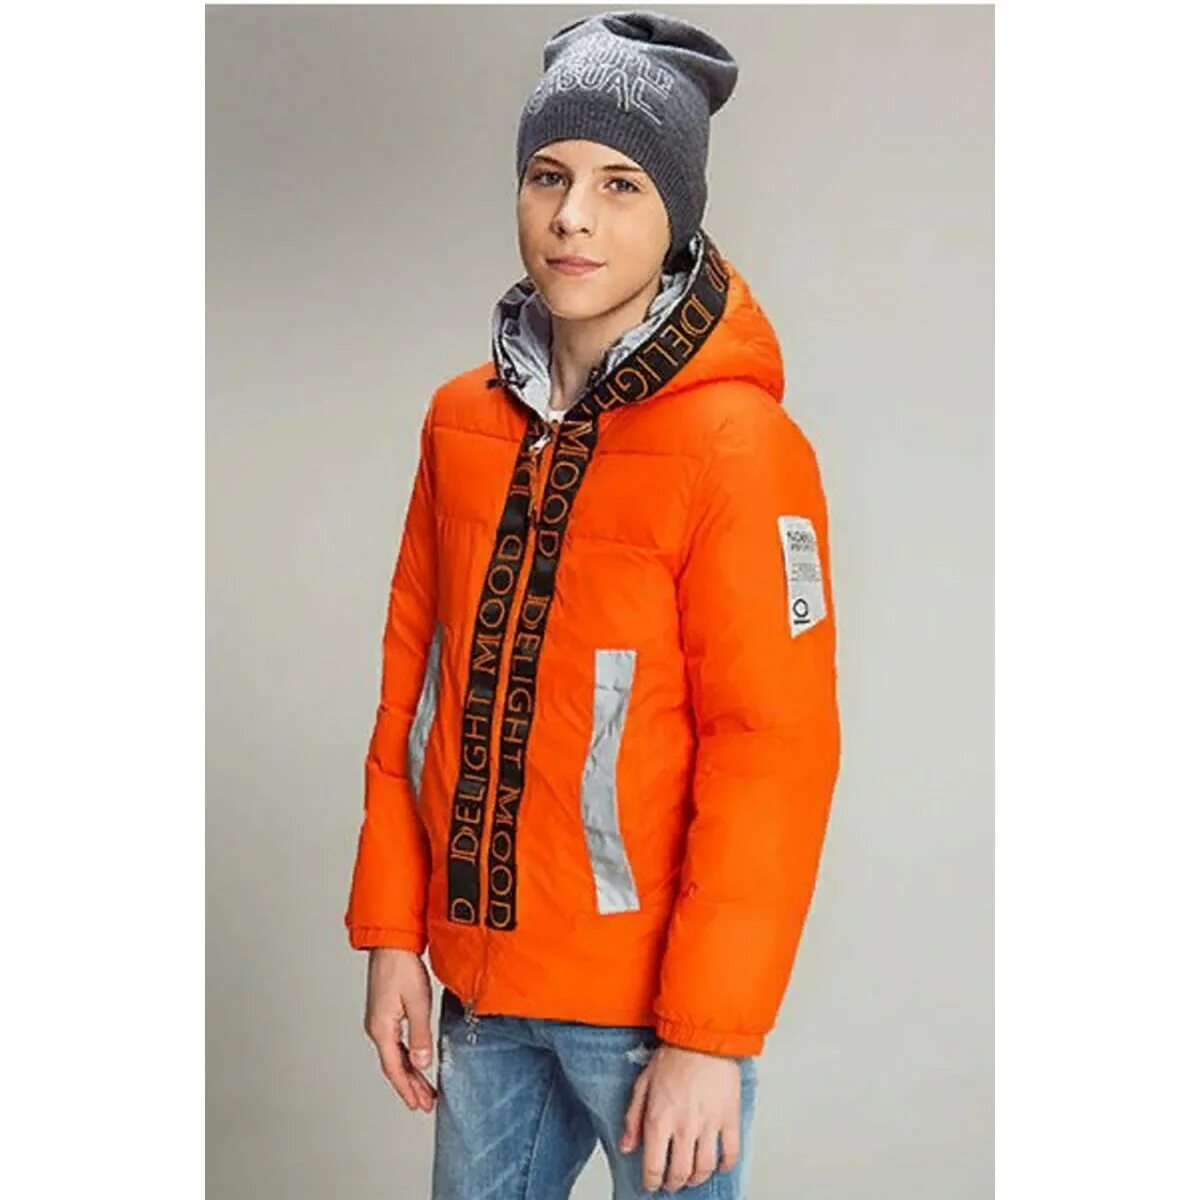 Куртка для мальчика 146. Noble people куртка демисезонная. Нобле пипл оранжевая куртка. Куртка talvi для мальчика оранжевая 2014. Оранжевая куртка для мальчика.